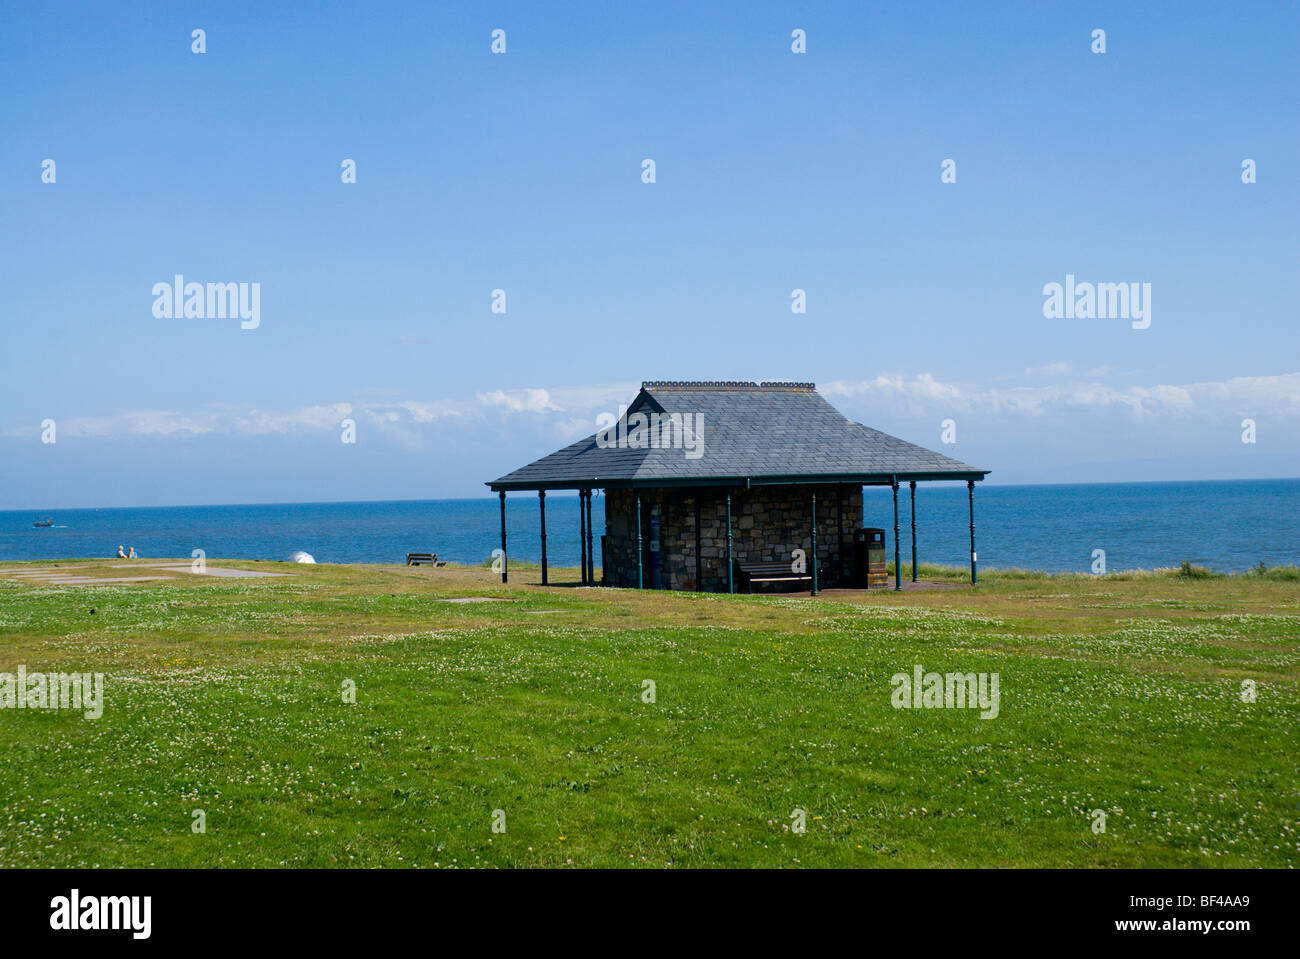 Seaside shelter, Porthcawl, South Wales, UK. Stock Photo